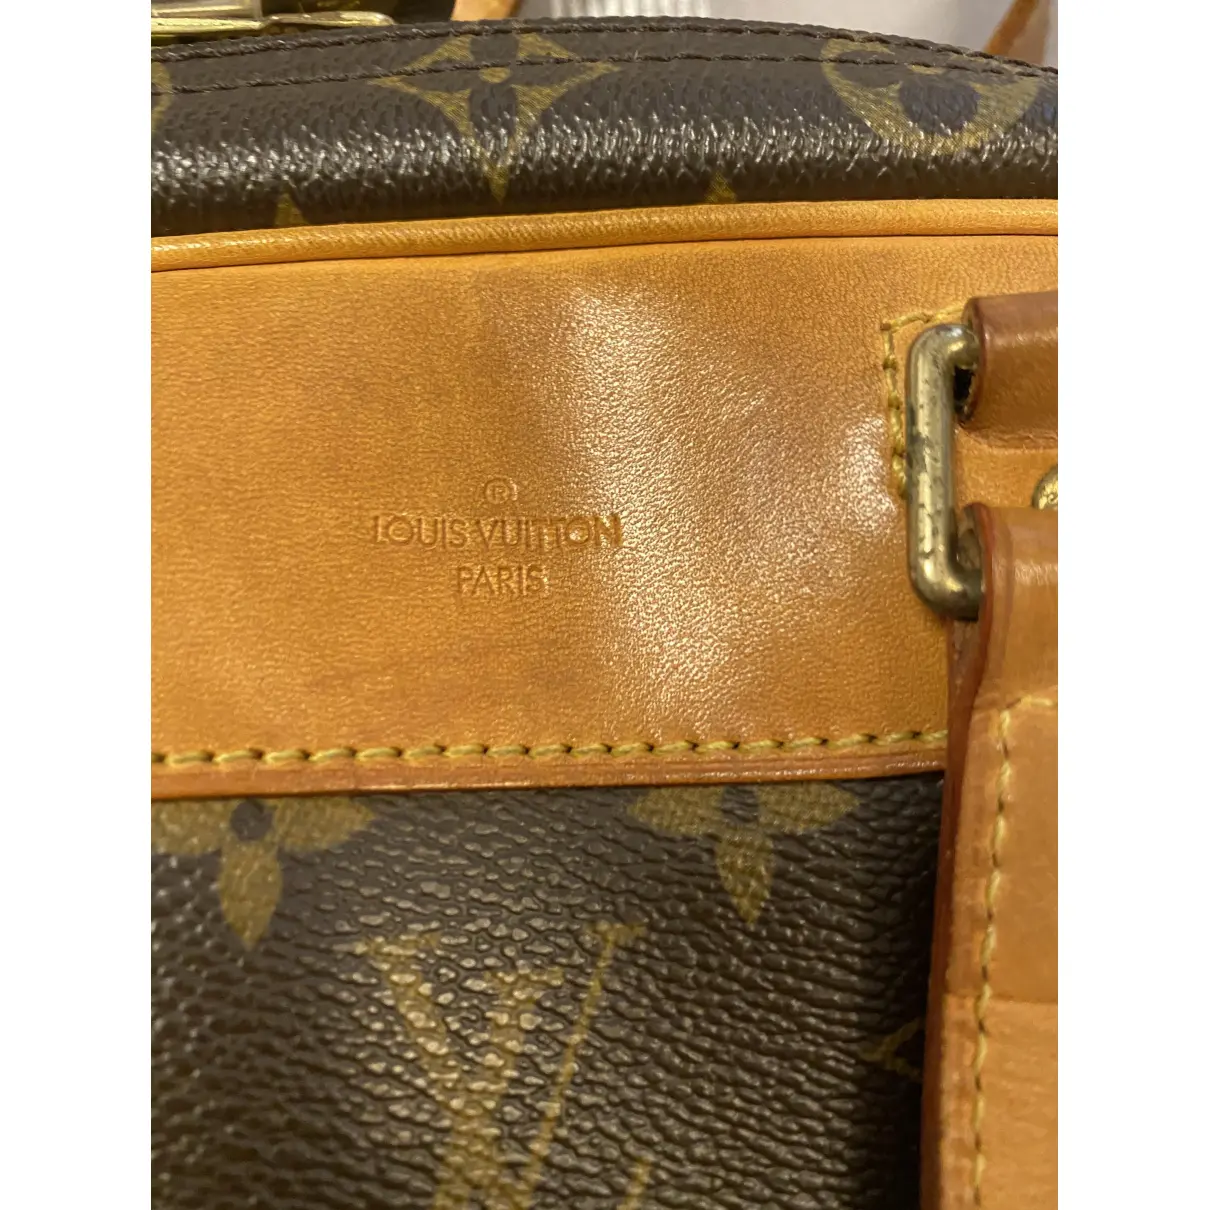 Buy Louis Vuitton Excursion cloth travel bag online